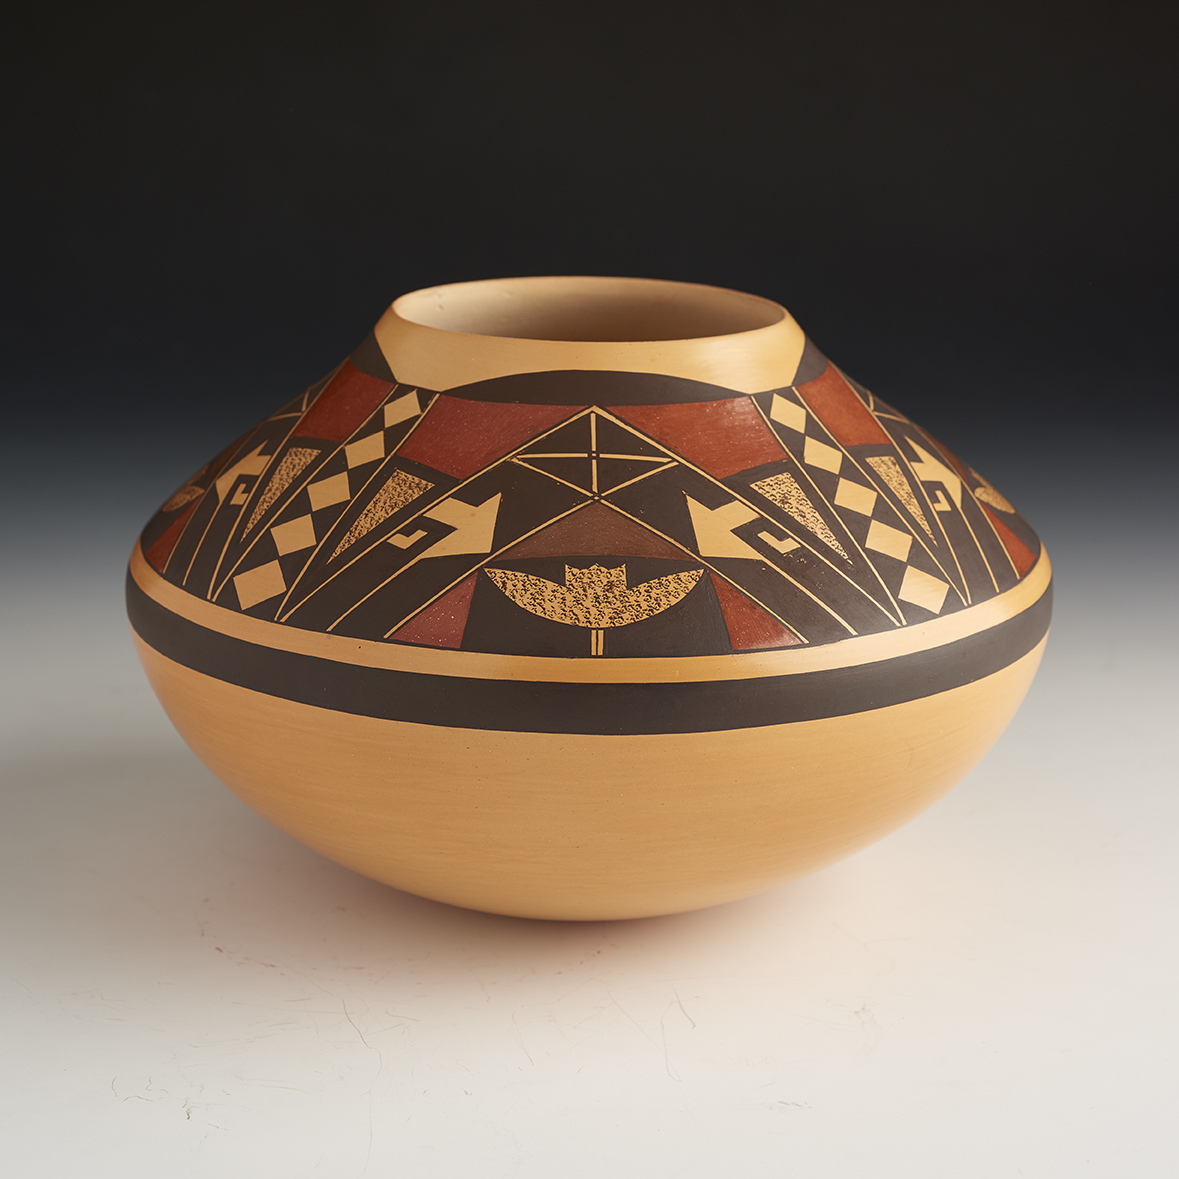 Traditional polychrome Hopi bowl